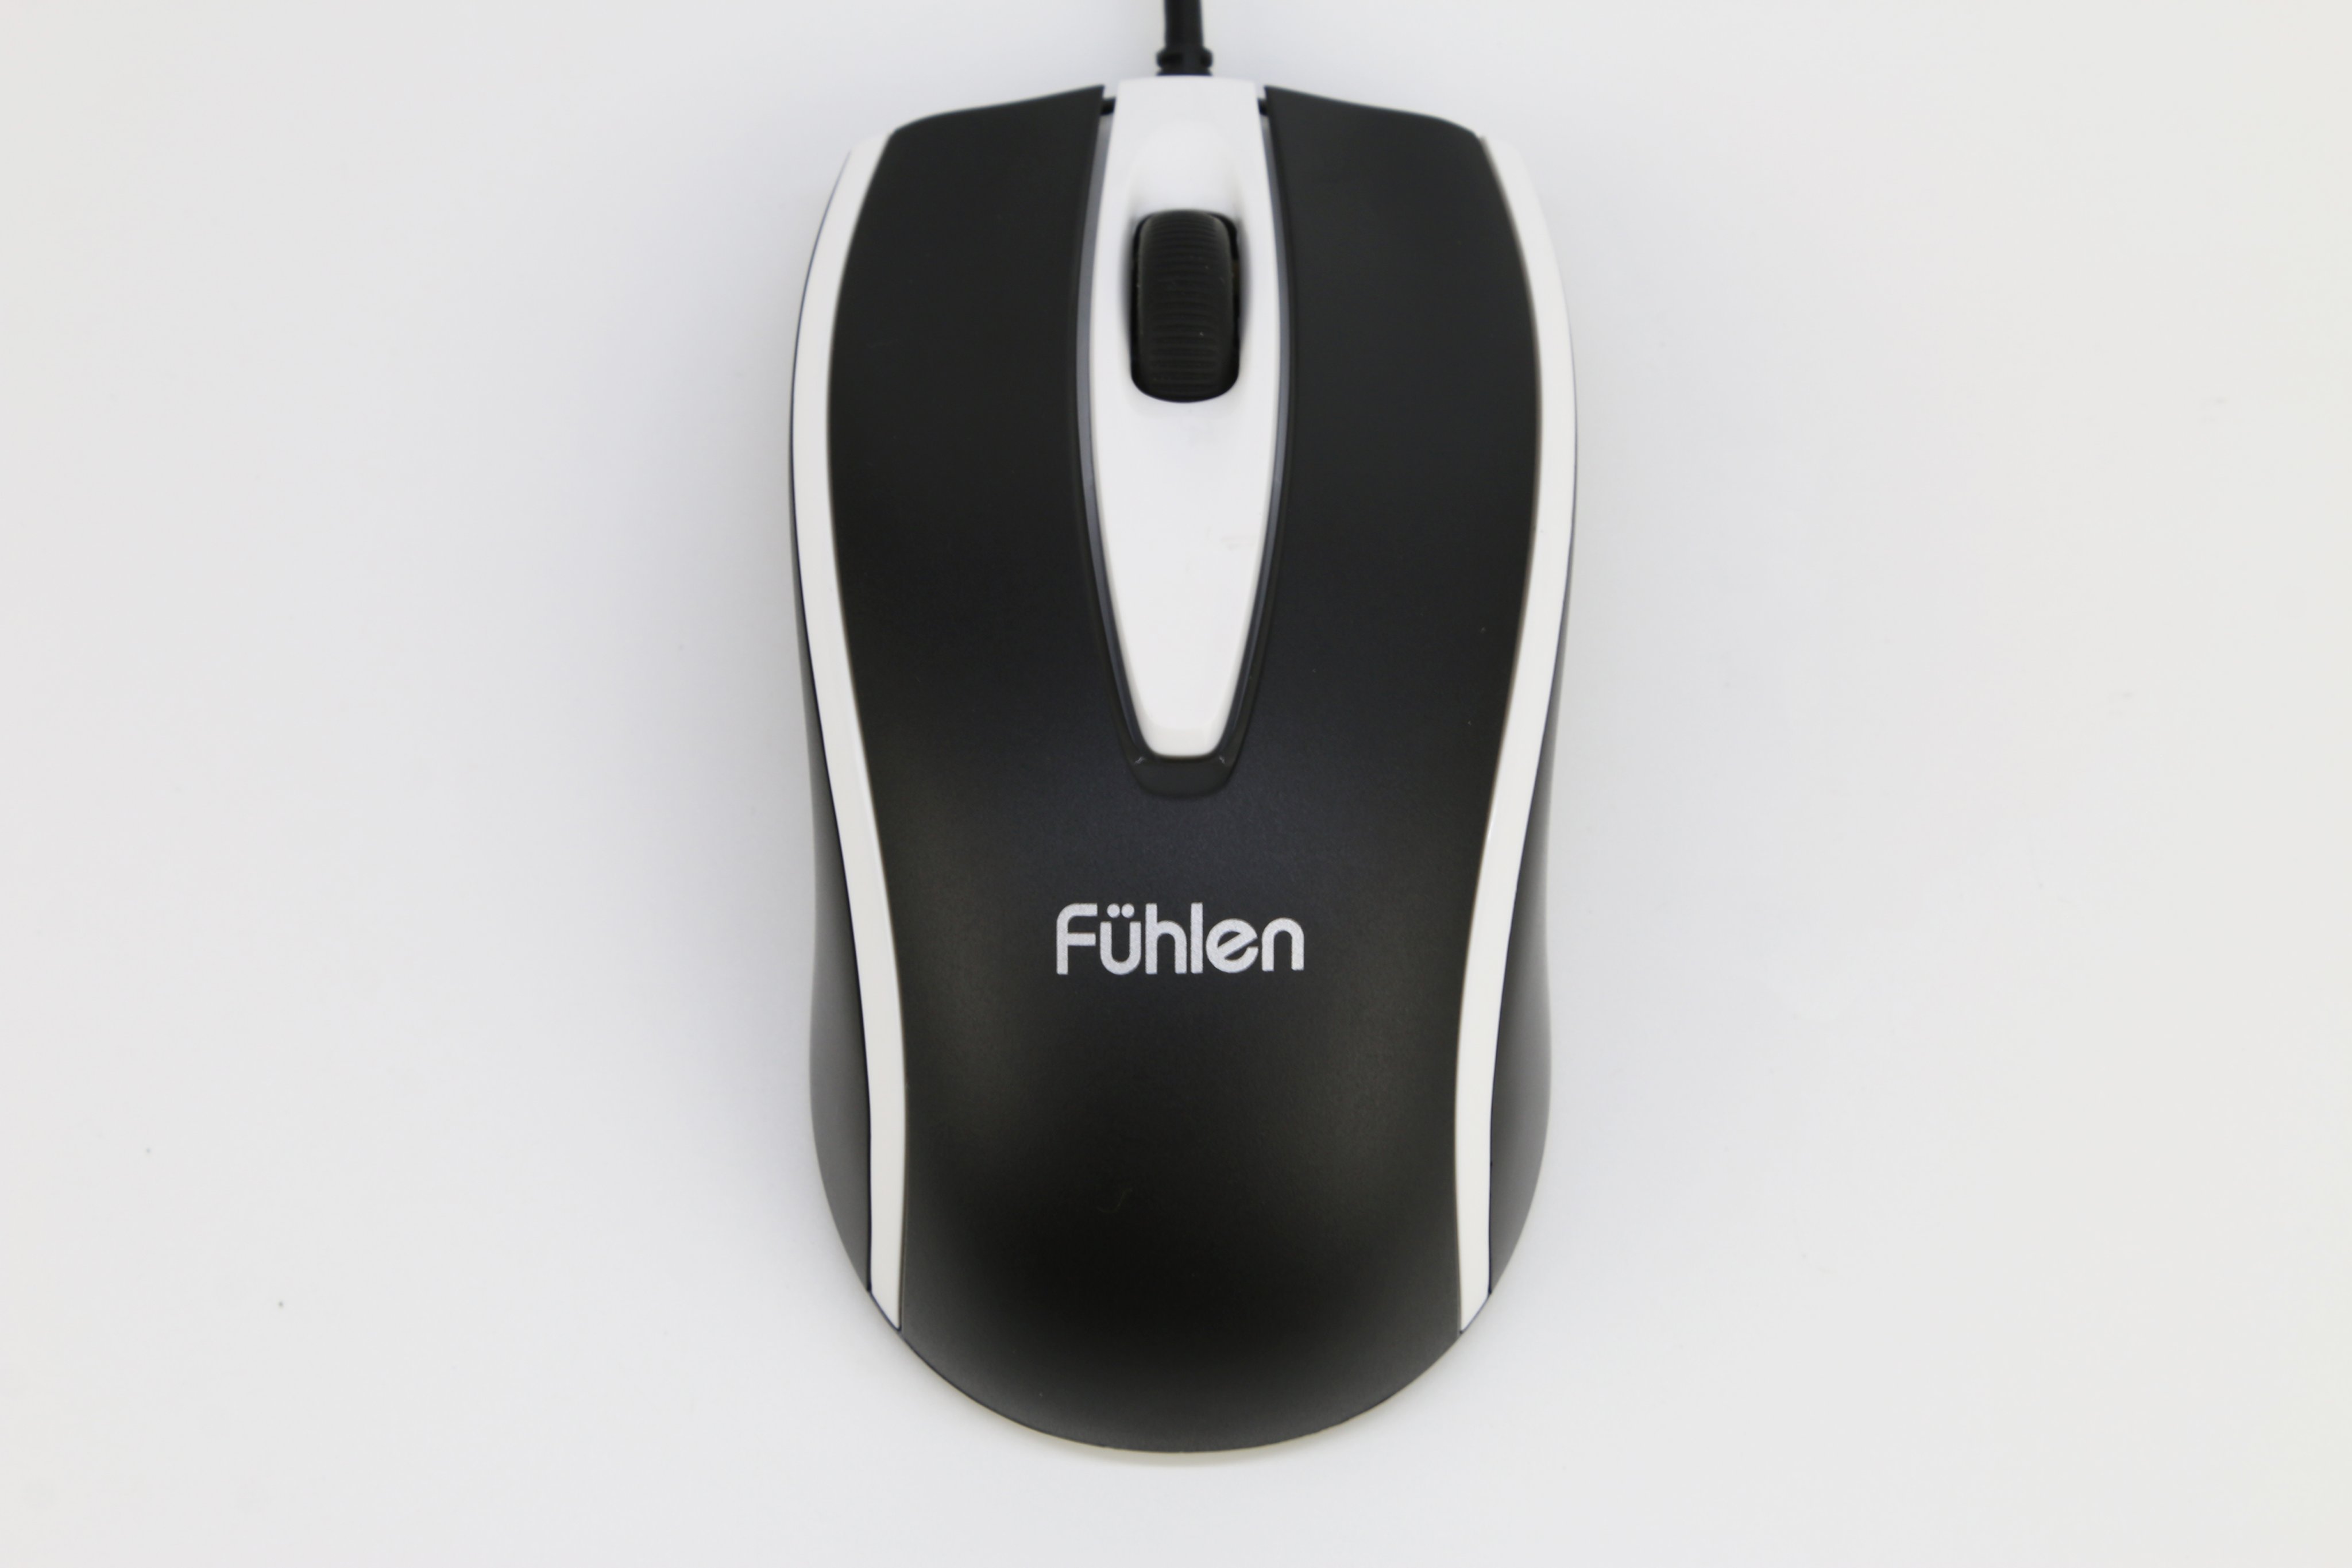 Chuột Fuhlen L102 (USB/đen trắng) có thiết kế đơn giản, quen thuộc